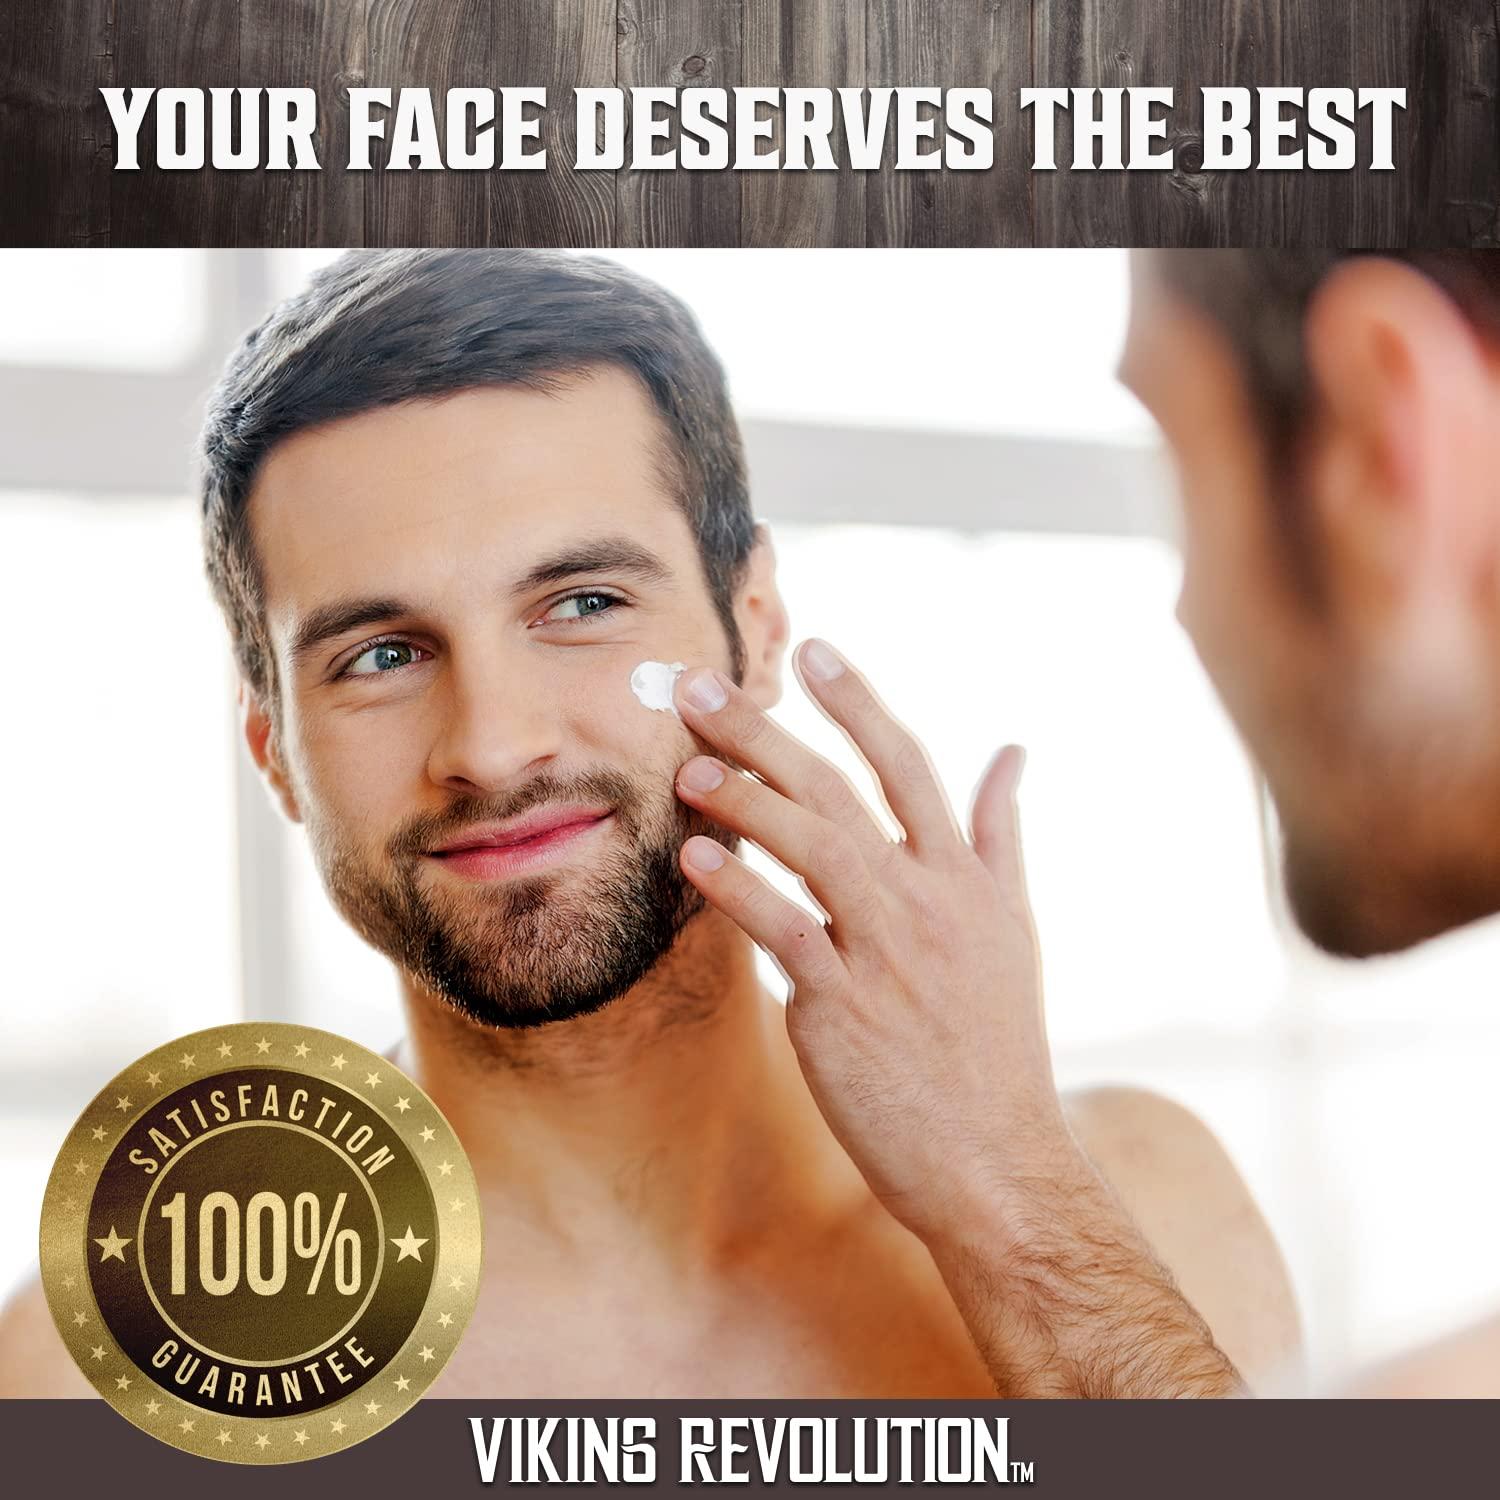 Buy Viking Revolution Beard Oil Combo Online at Best Price